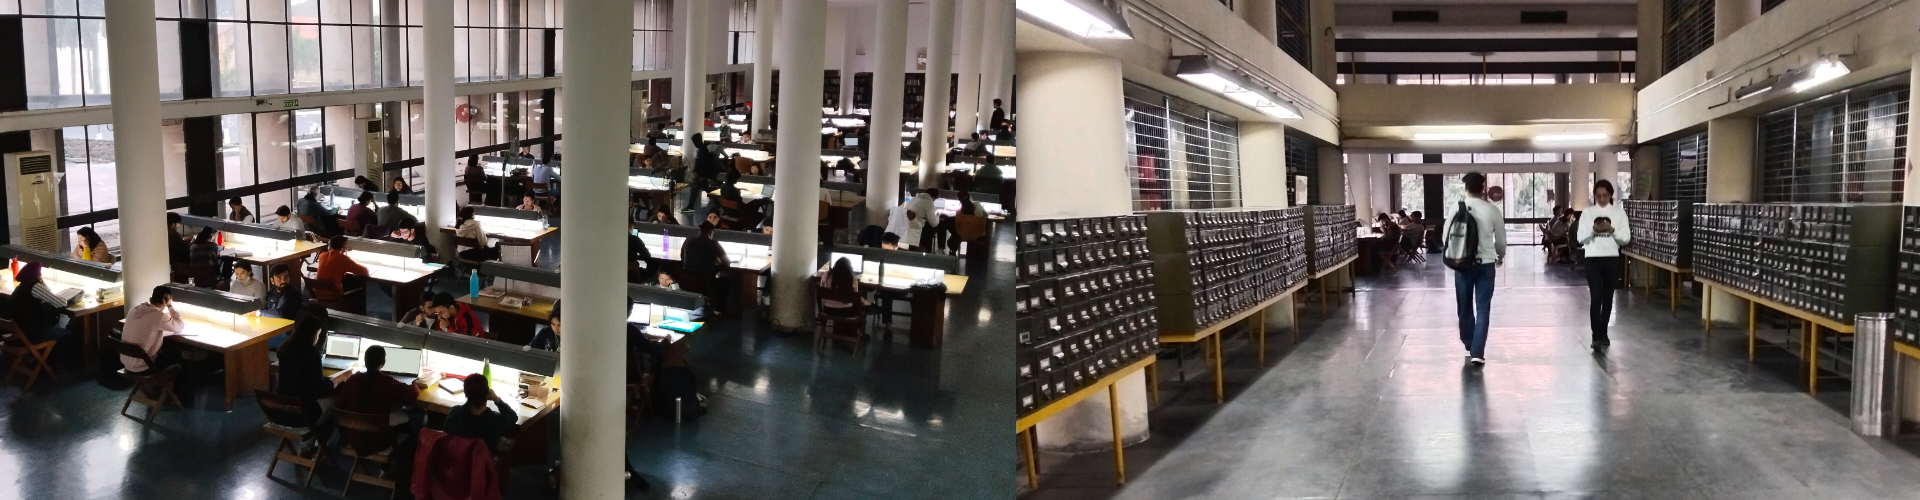 Panjab University Chandigarh Main Library